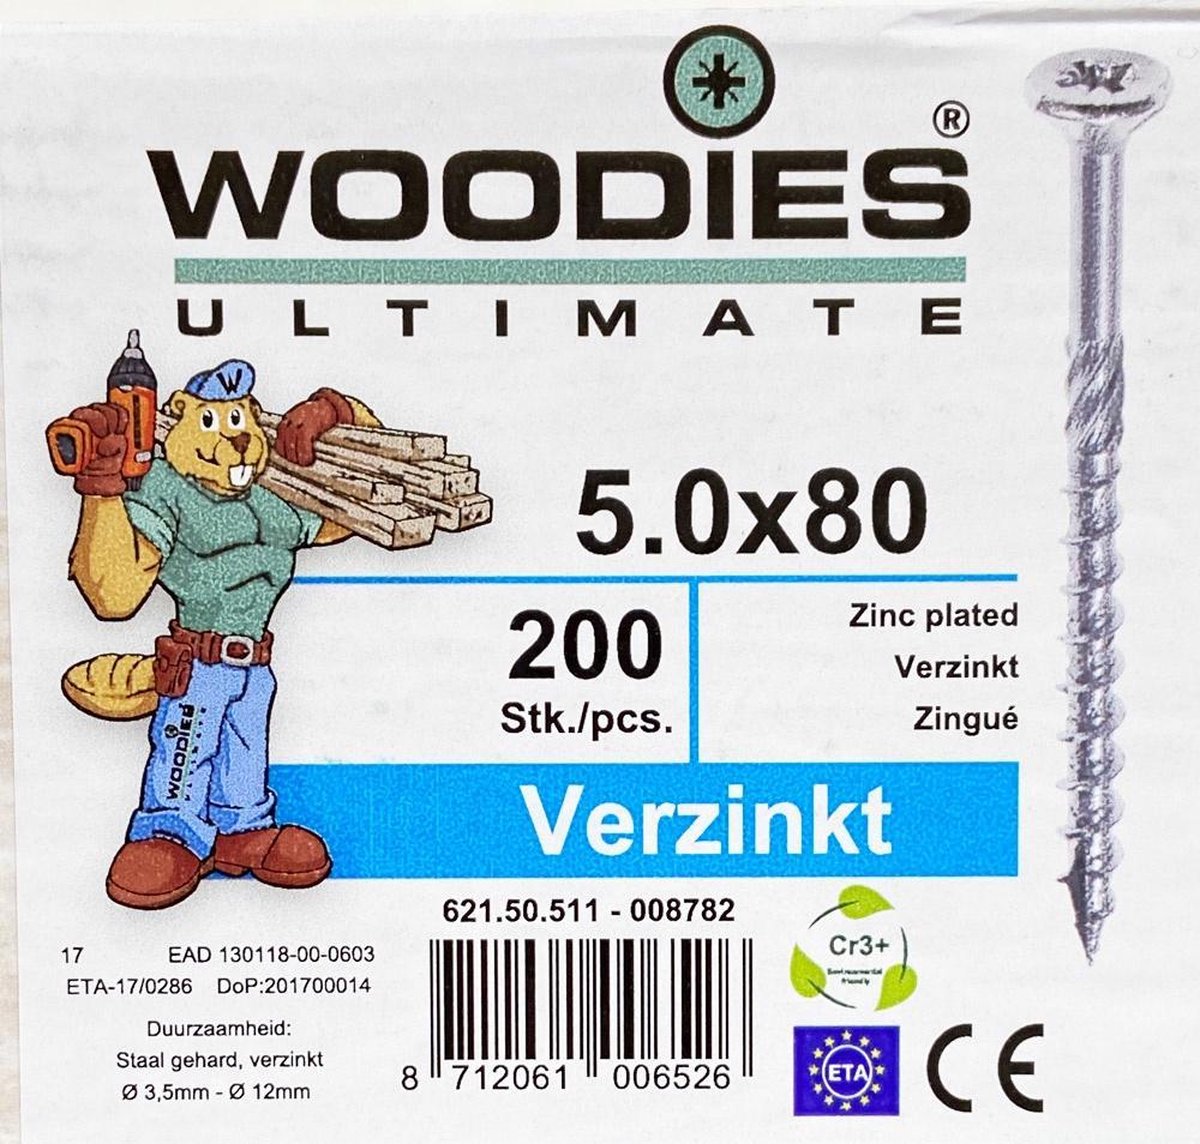 Woodies schroeven 5.0x80 verzinkt PZD 2 deeldraad 200 stuks - Woodies Ultimate